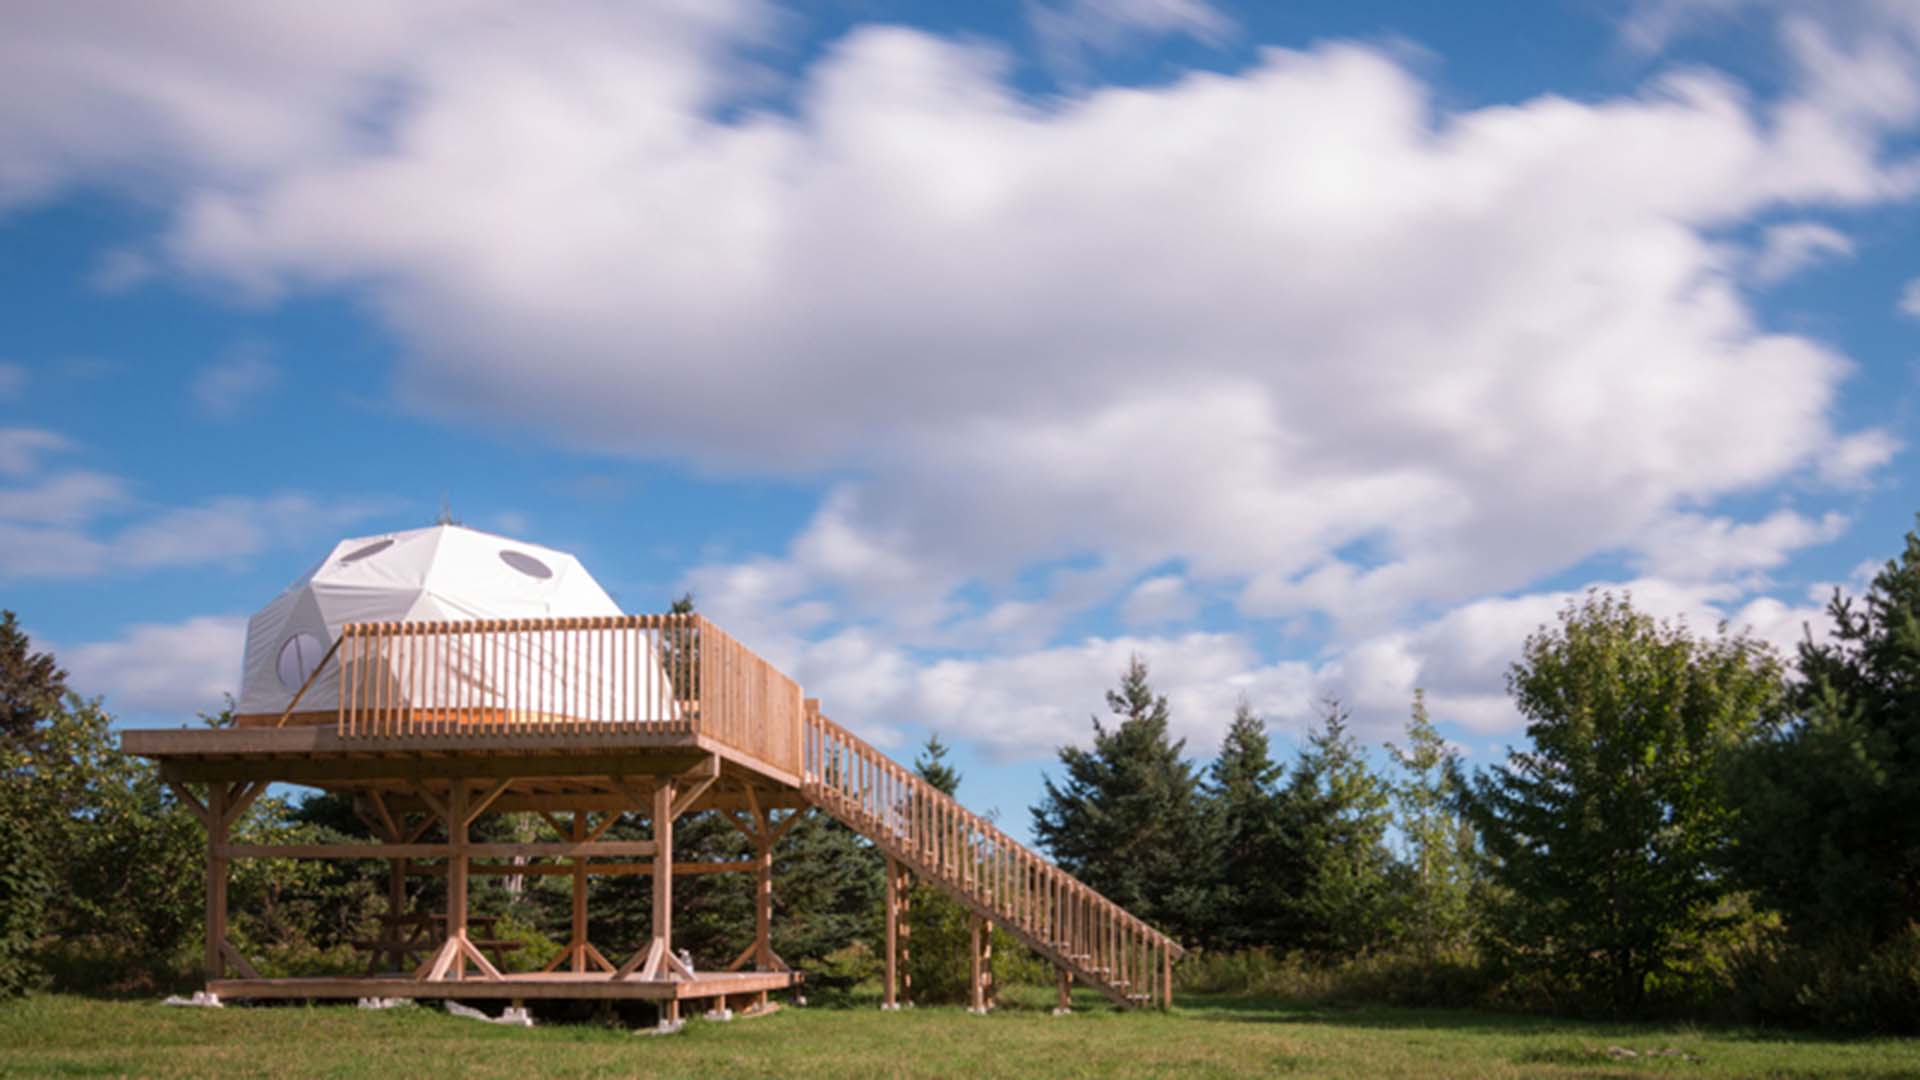 Geodesic dome in Cape Breton Nova Scotia, bright, cloudy sky